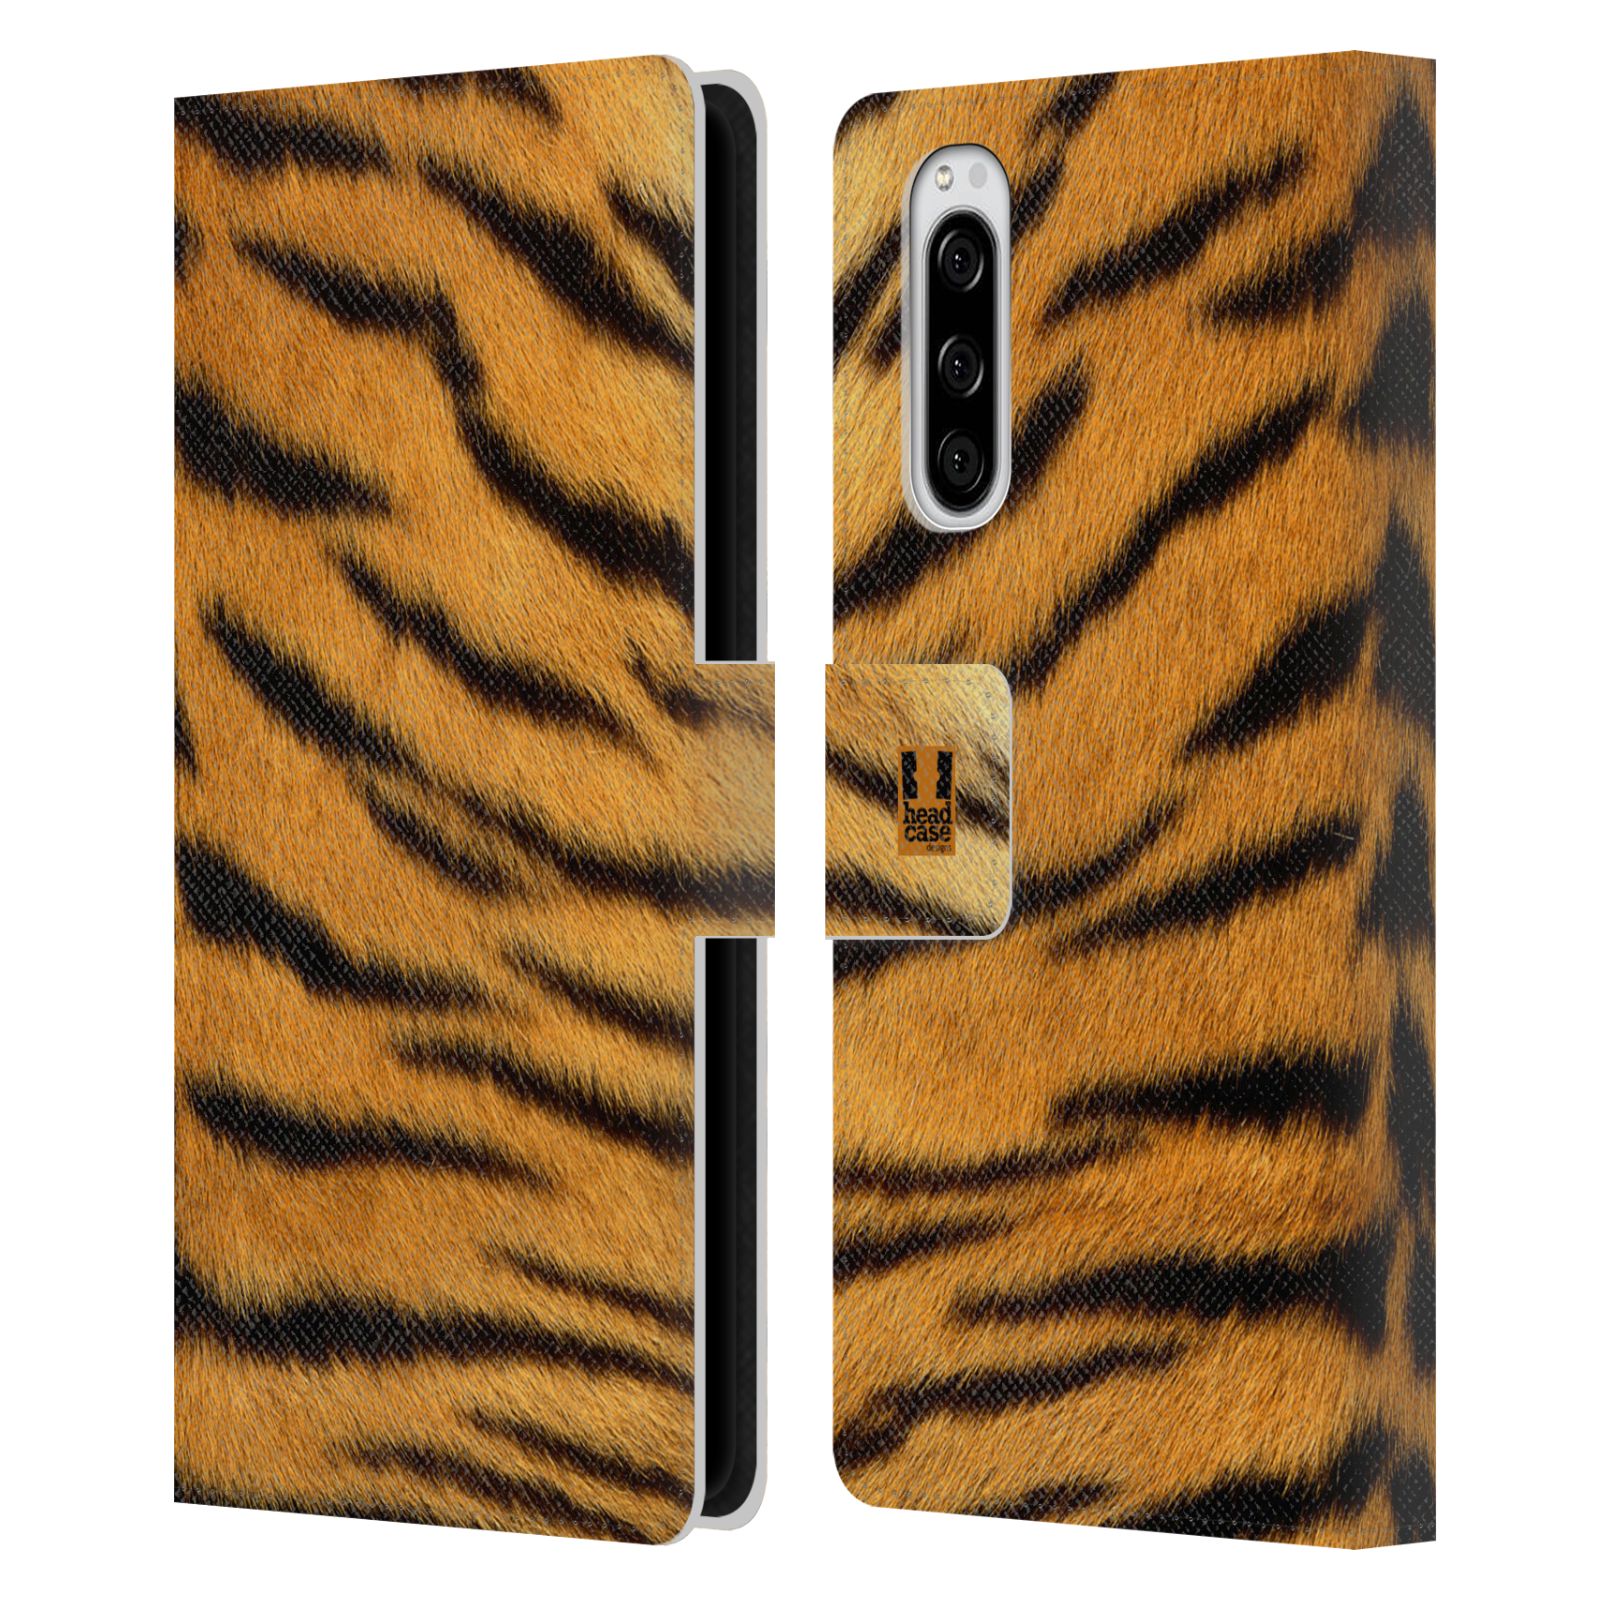 Pouzdro na mobil Sony Xperia 5 zvíře srst divoká kolekce tygr